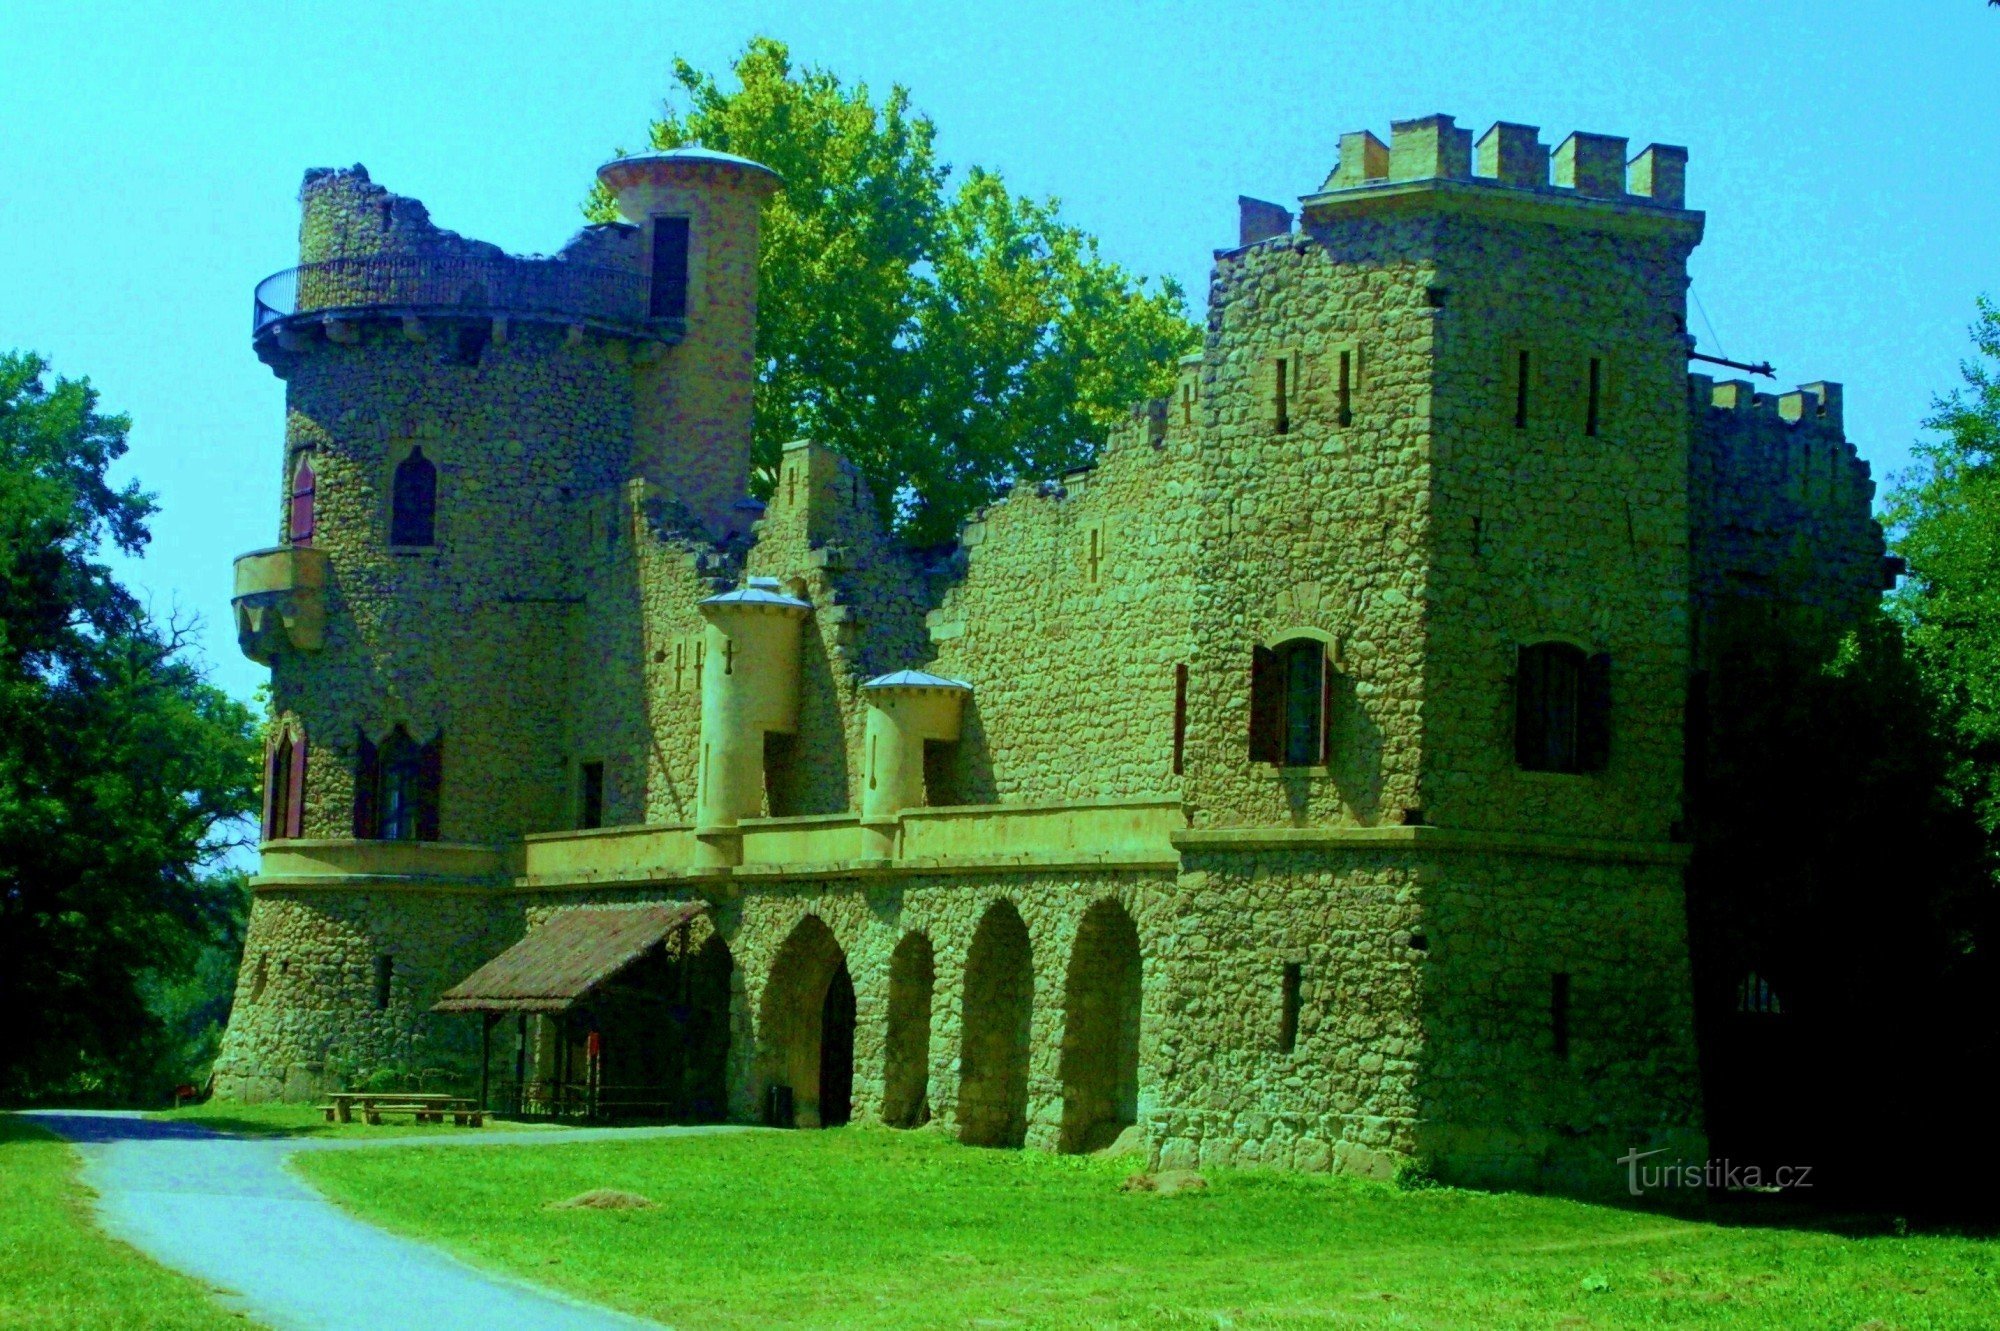 Fra Jans slot til slottet i Lednice